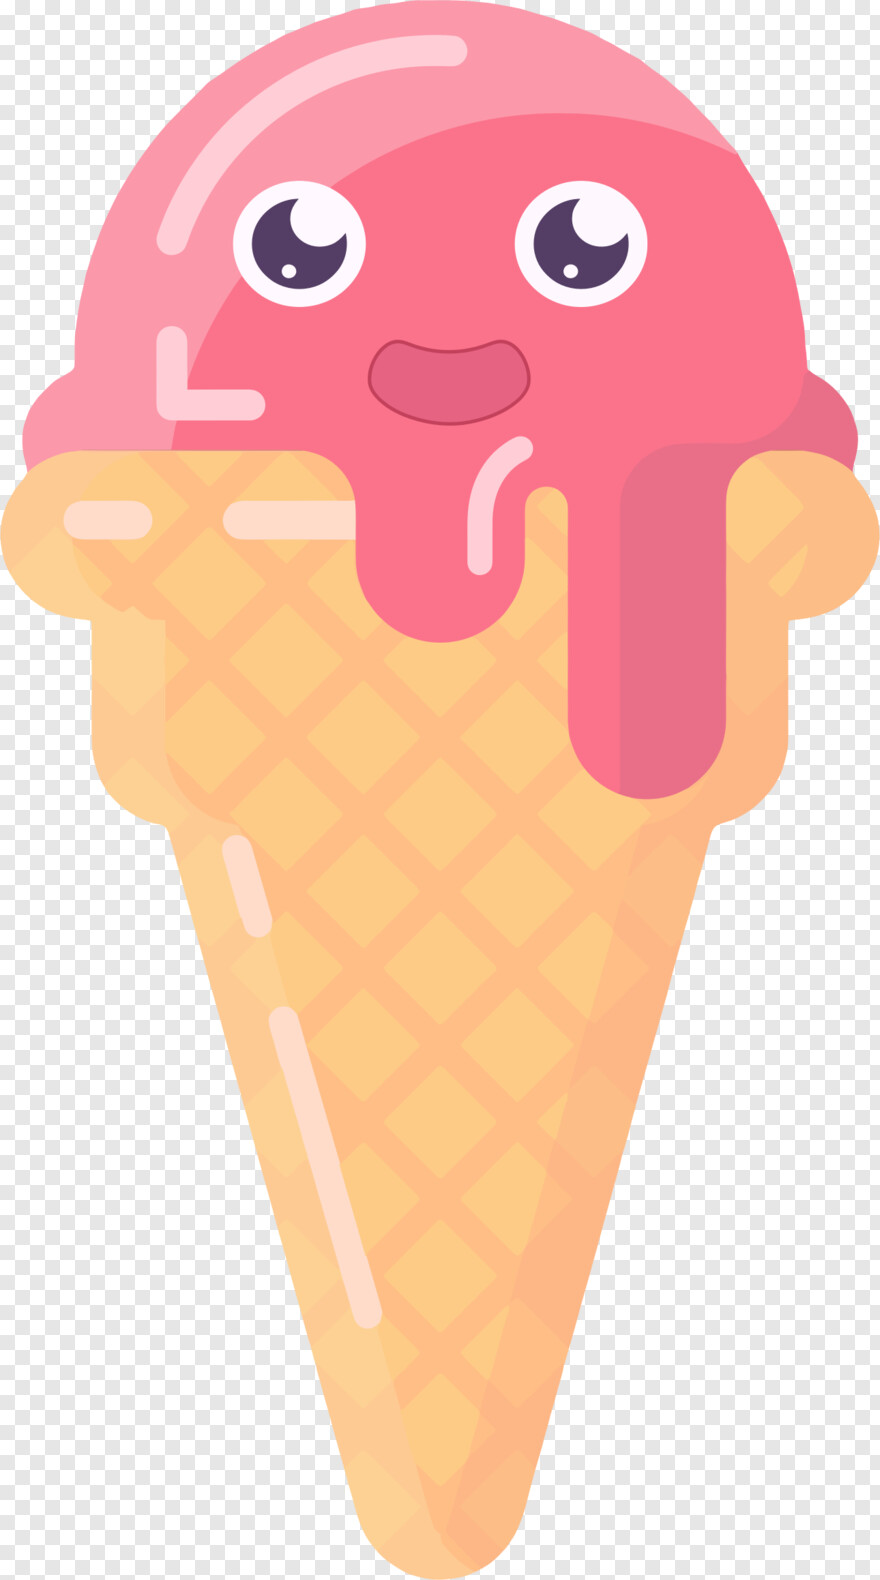 ice-cream-cone # 366804